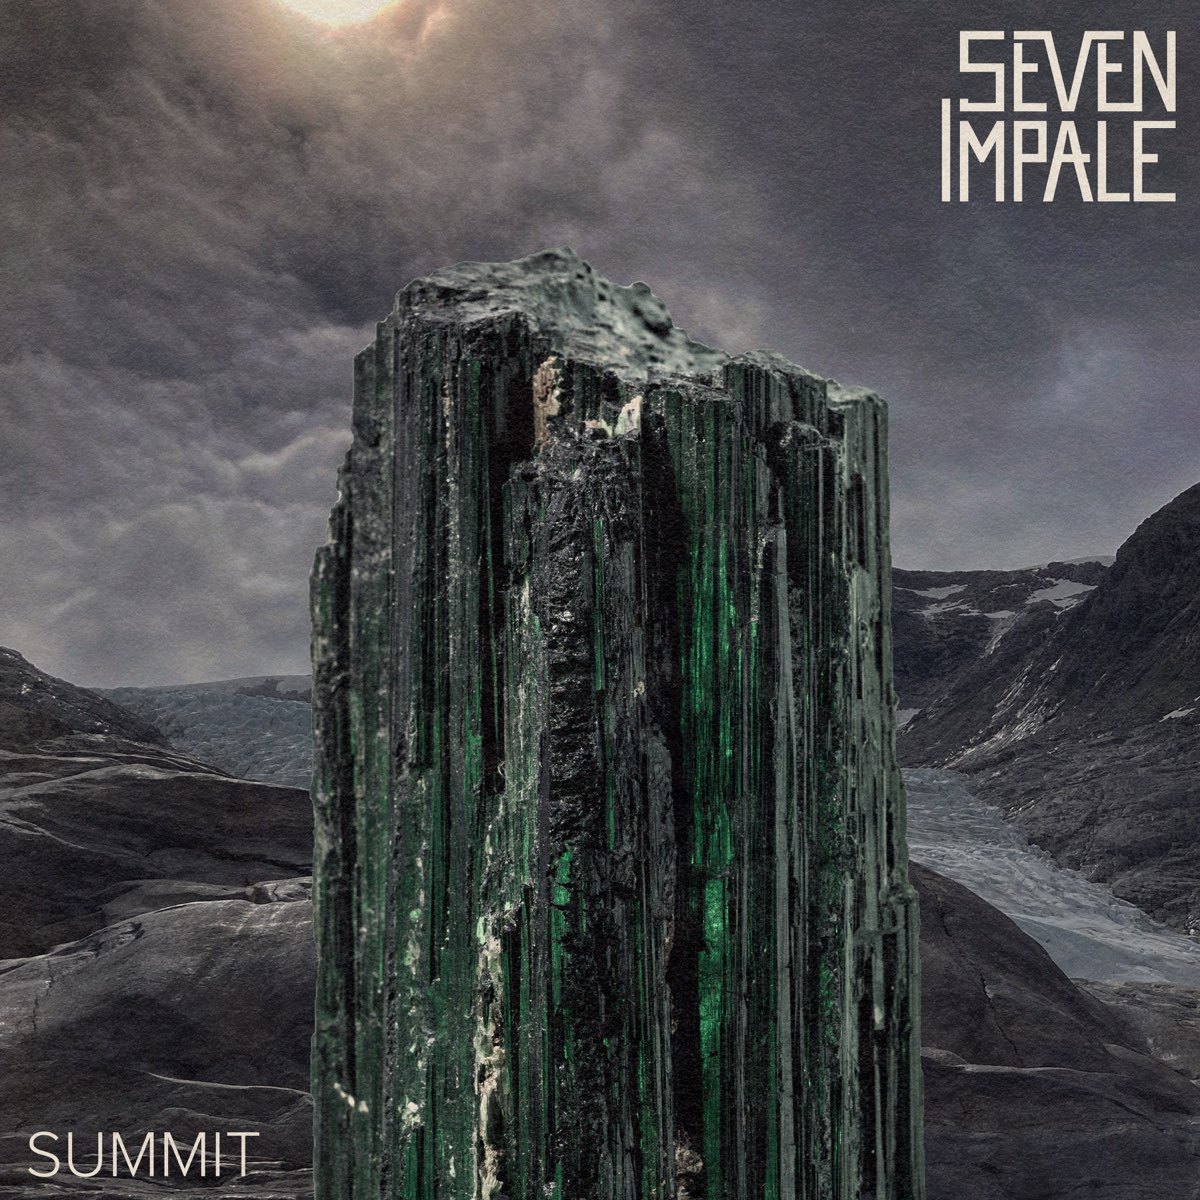 SUMMIT - Álbum de Seven Impale - Apple Music